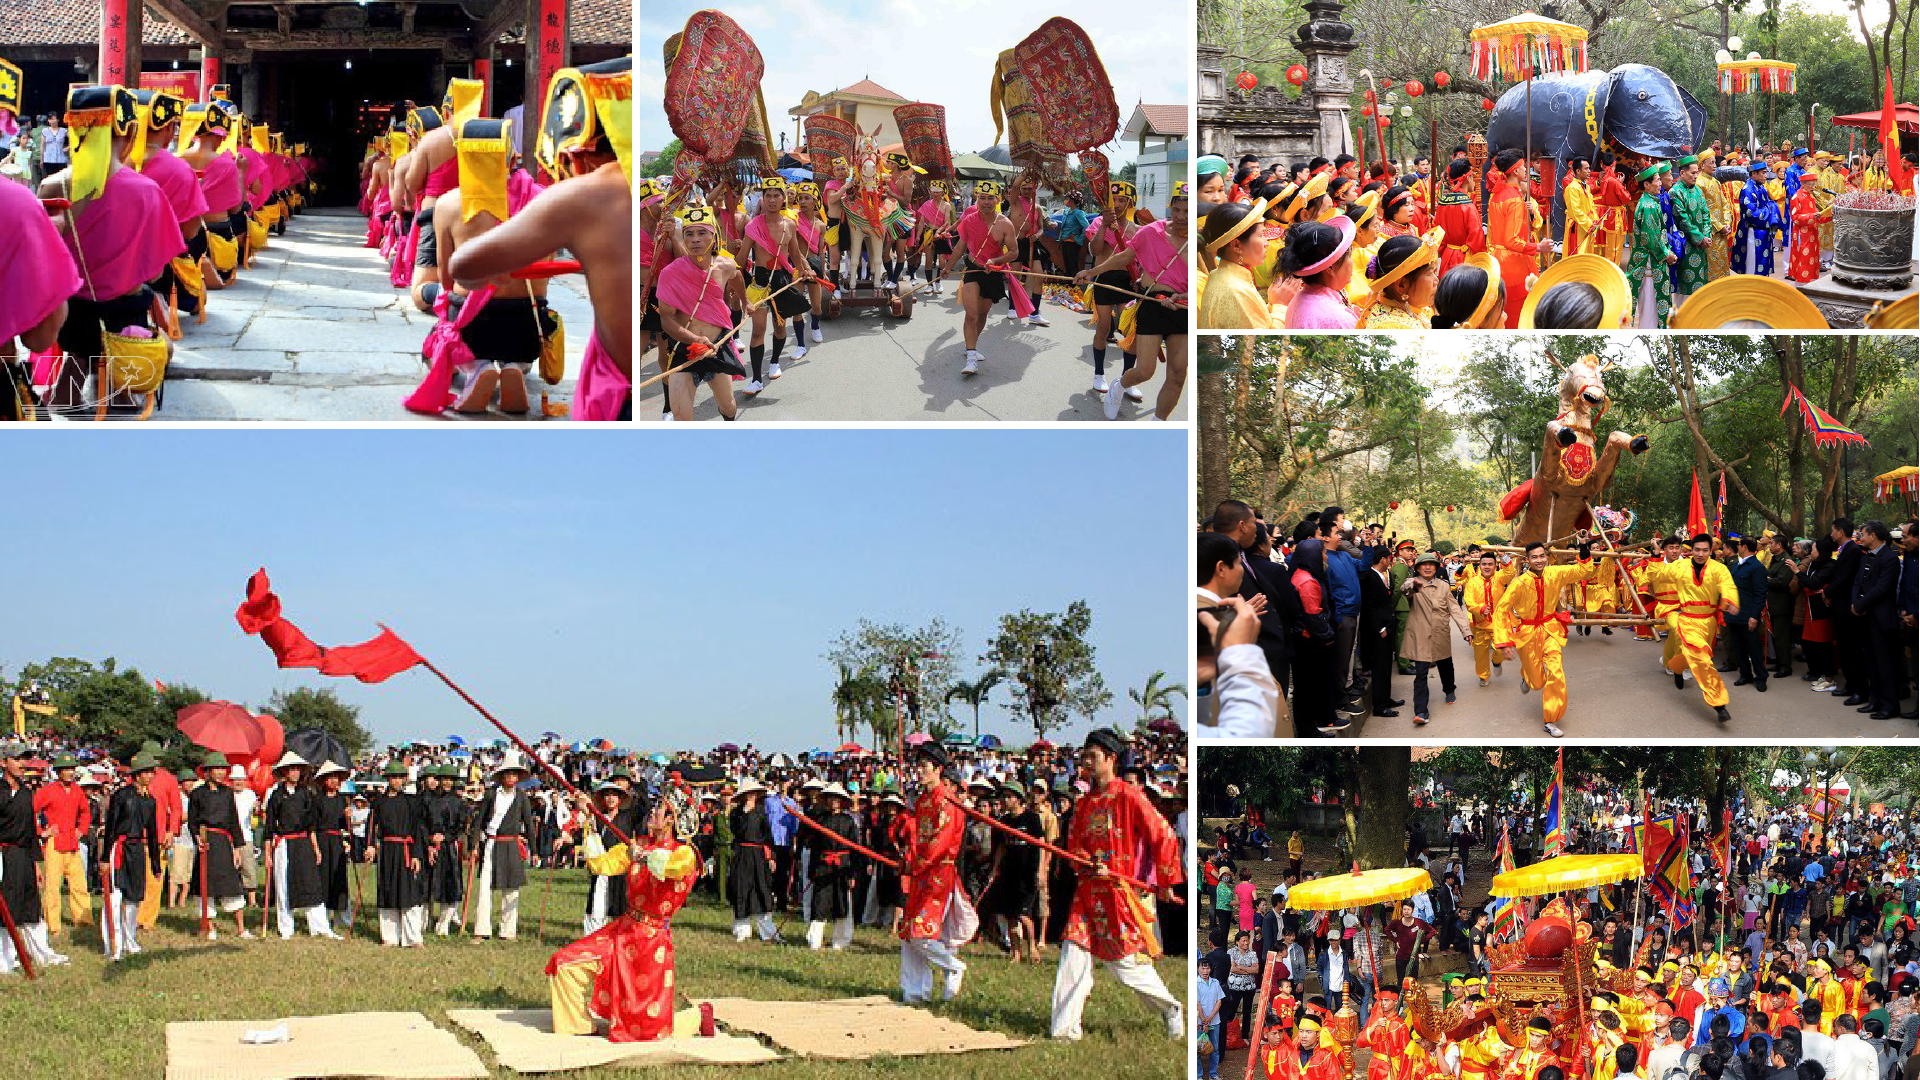 Hội Gióng Sóc Sơn được tổ chức vào tháng Giêng hàng năm ở đền Sóc, xã Phù Linh, huyện Sóc Sơn